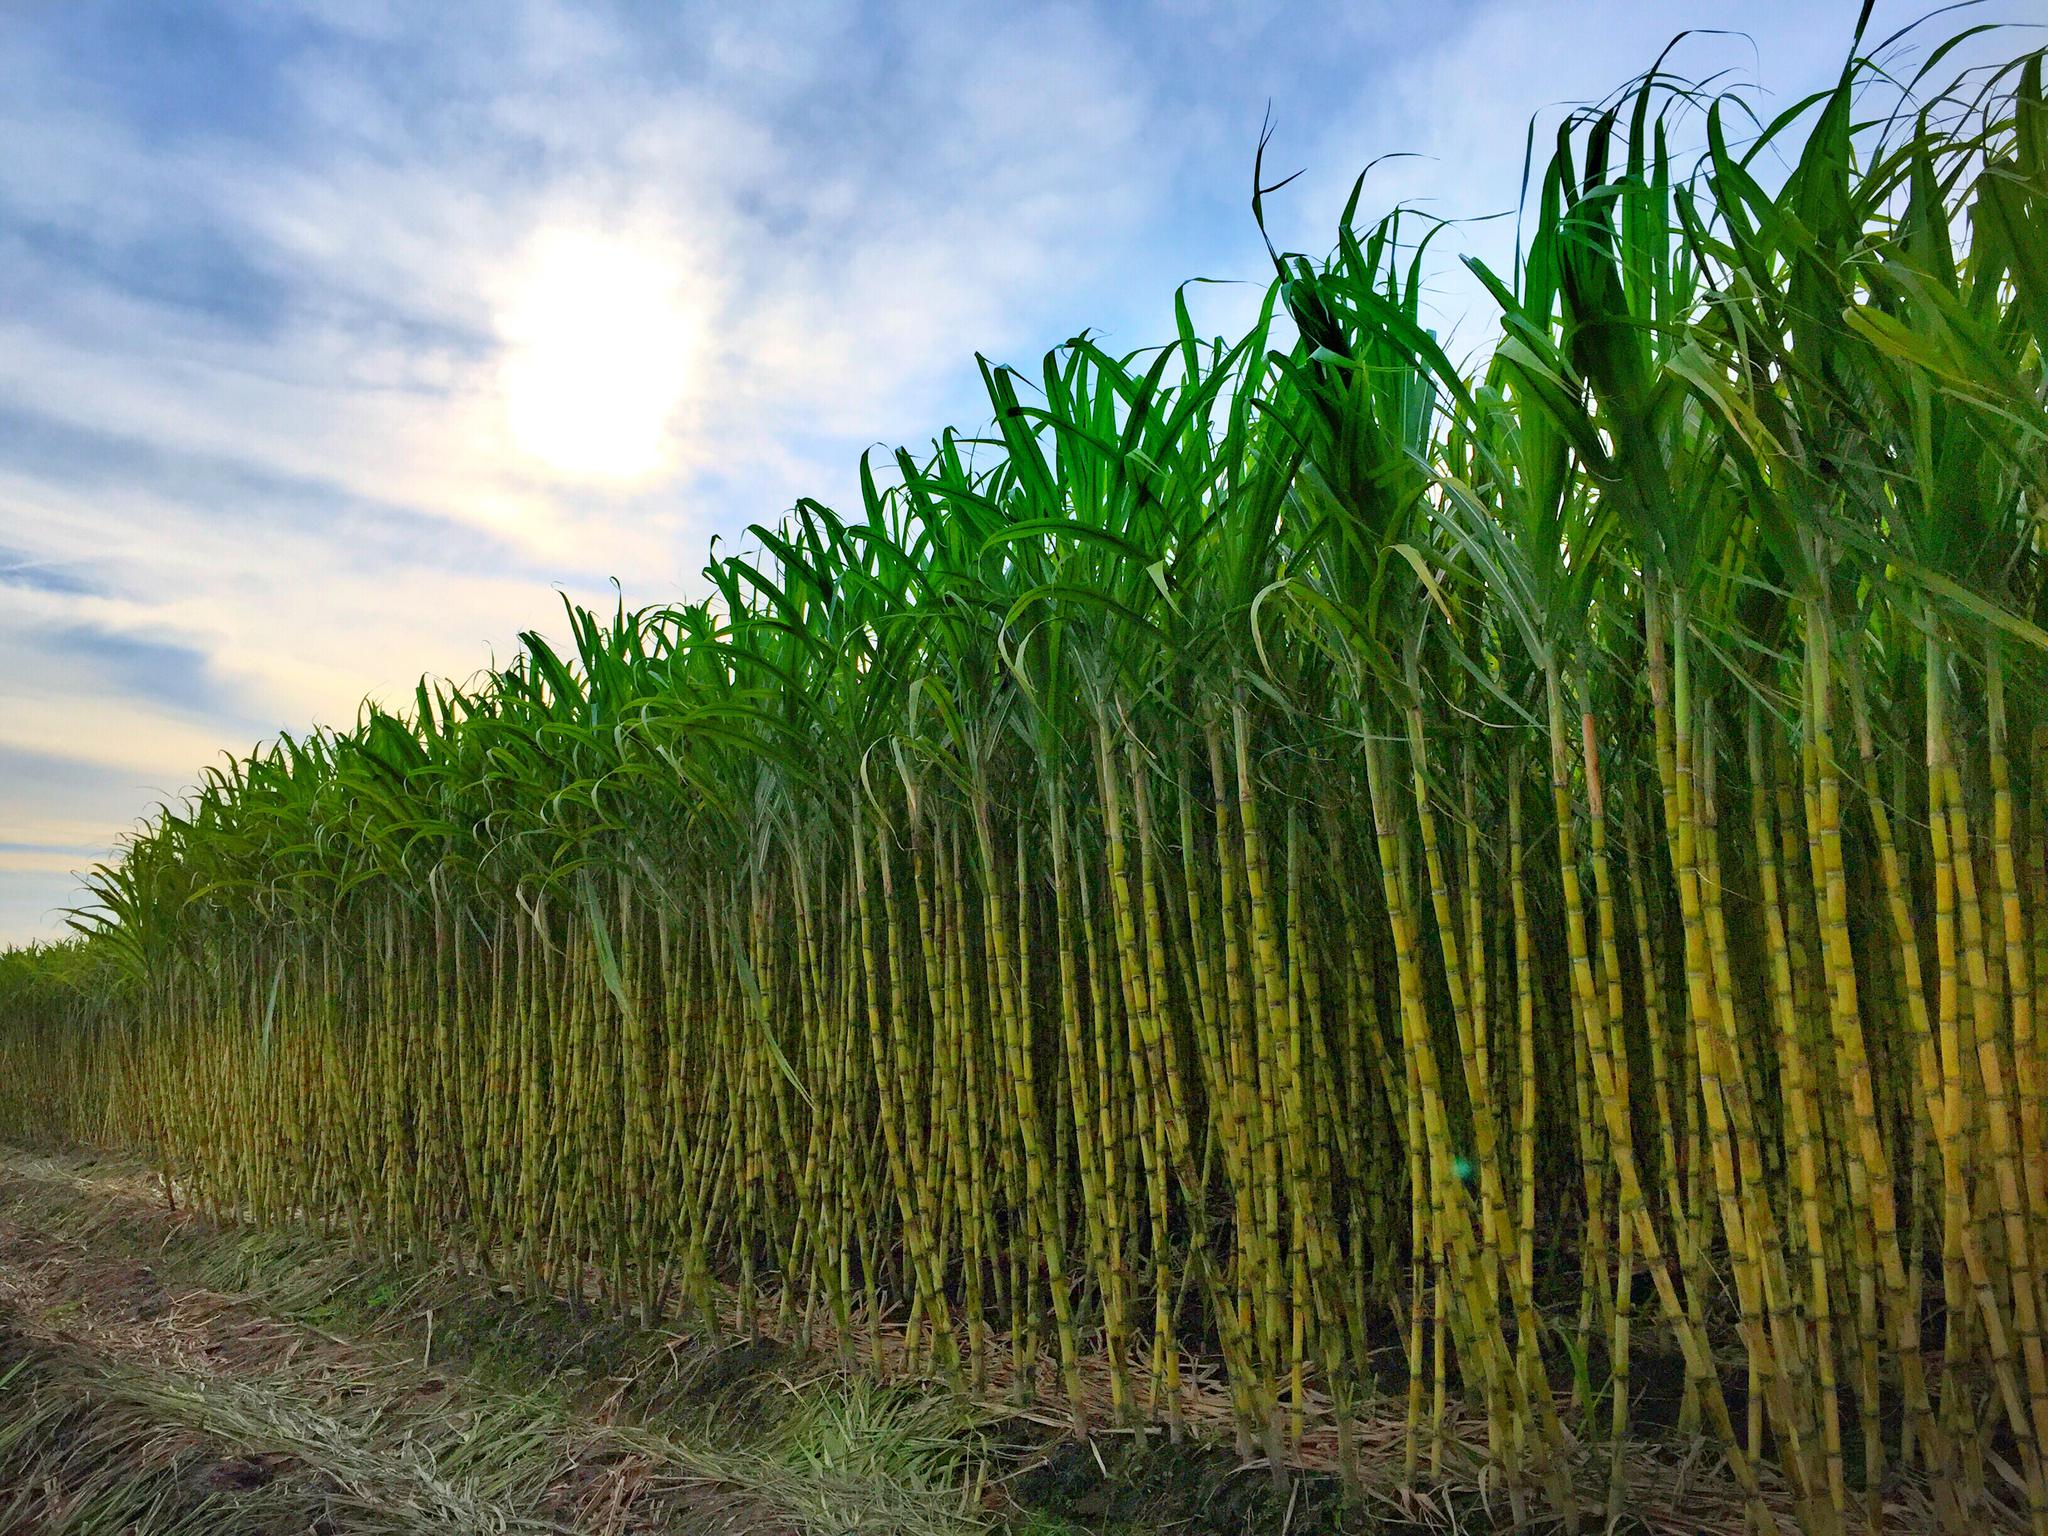 甘蔗高产栽培技术:选种是关键 